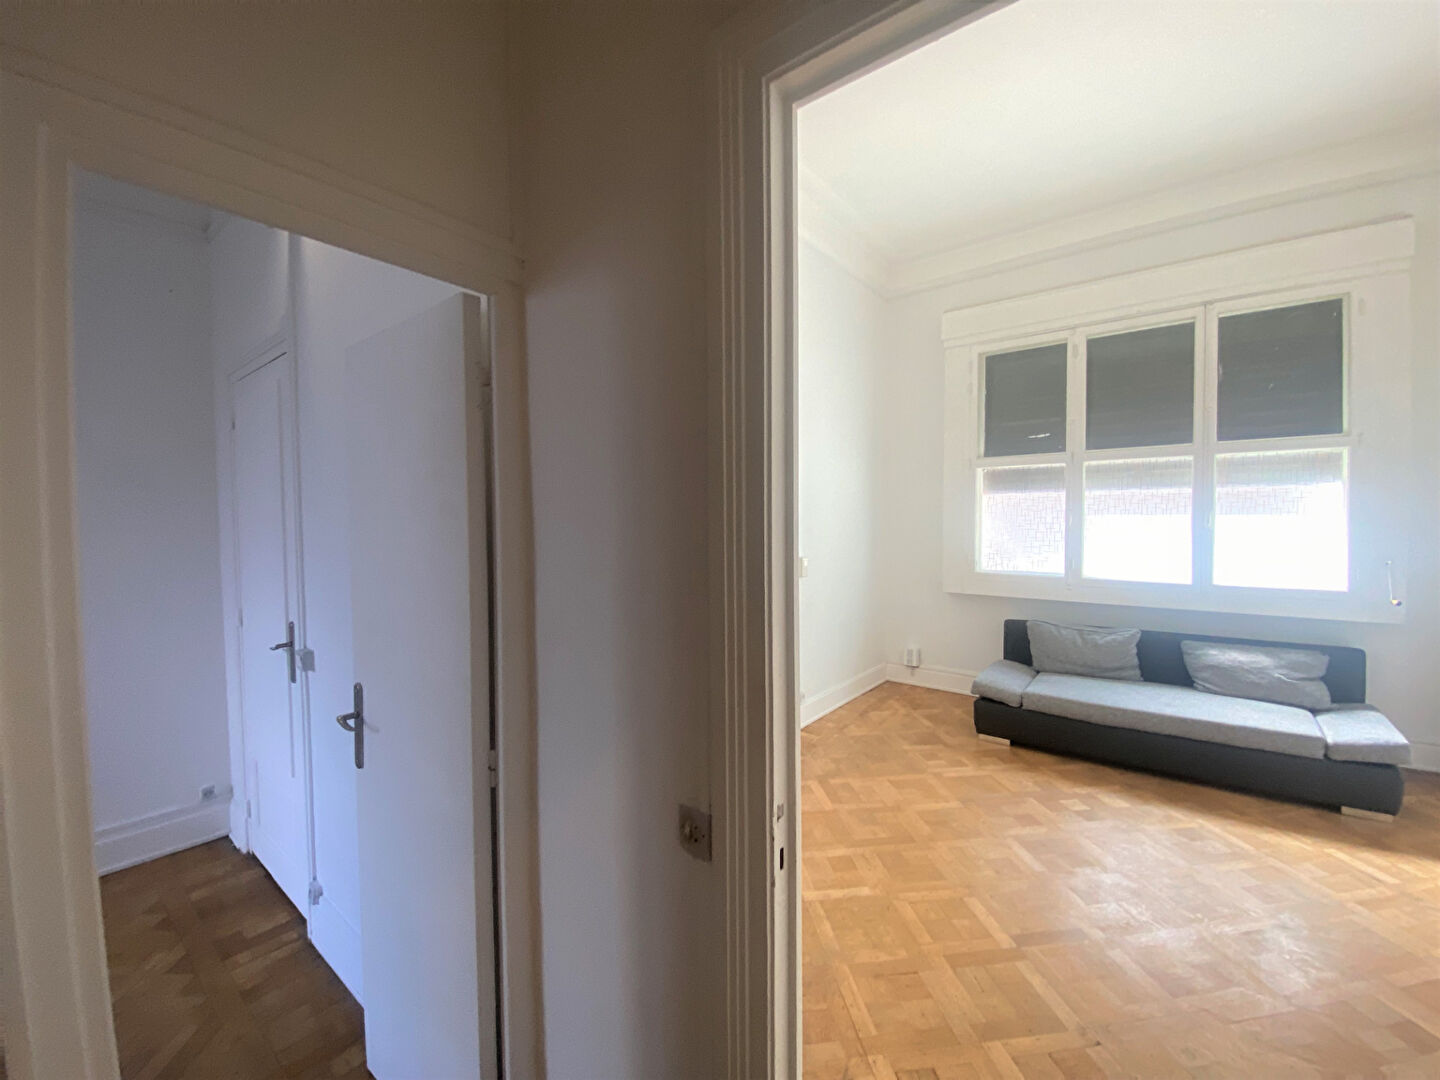 
Lille Vauban Appartement Lille 3 pièce(s) 72.33 m2 idéal profession libérale ou habitation
